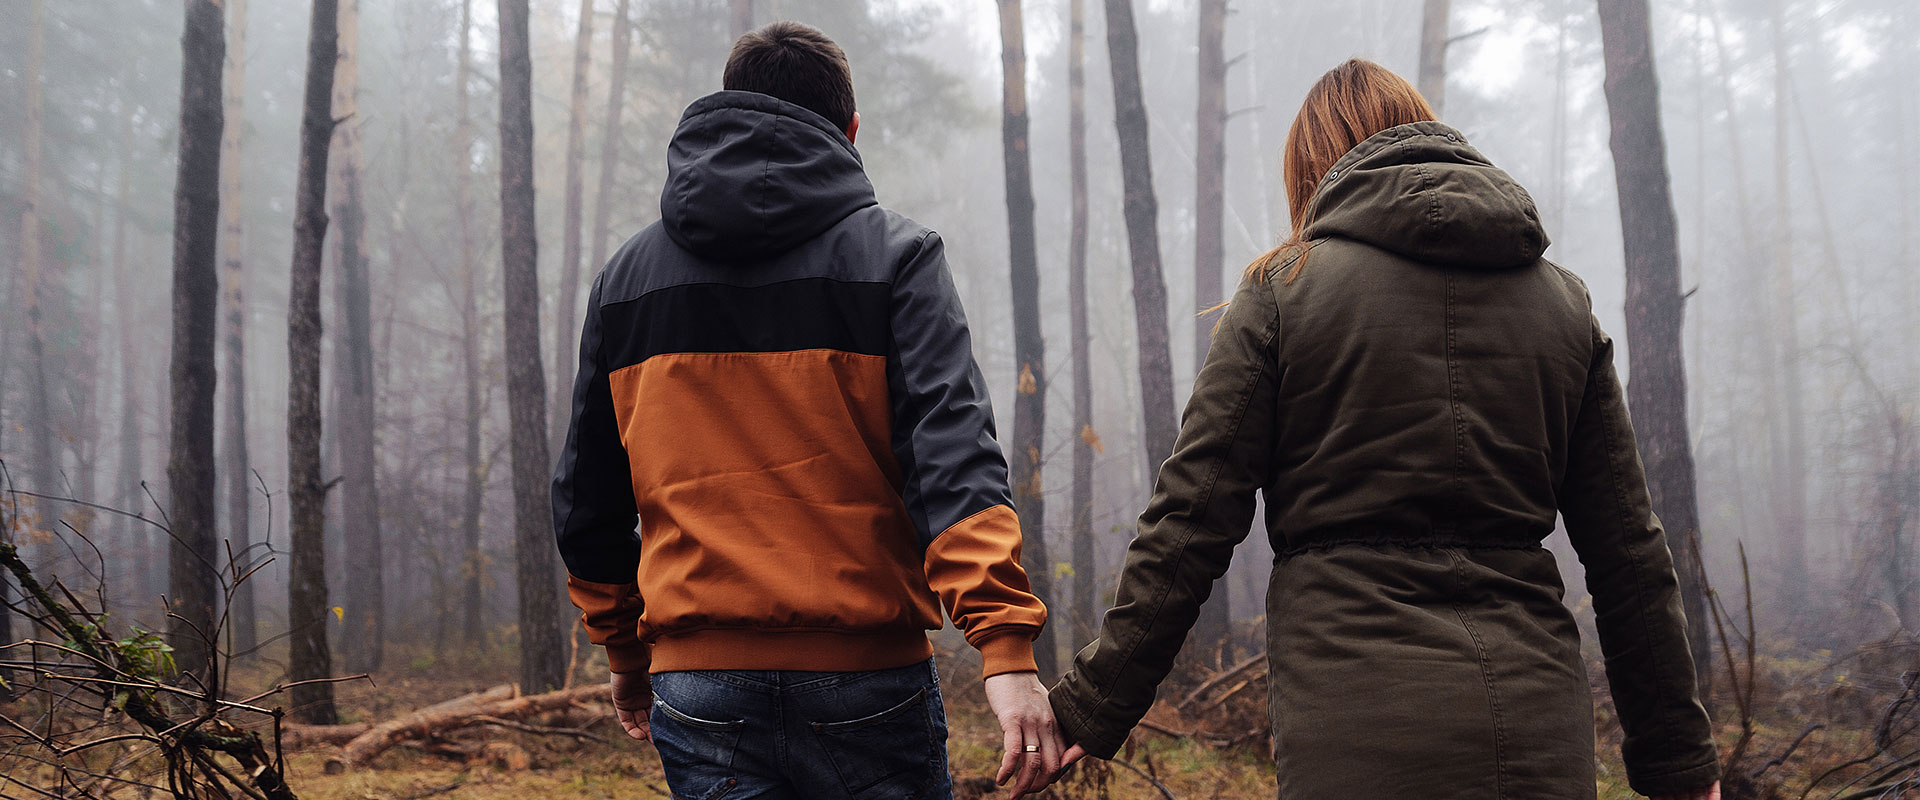 two people walking in dark woods